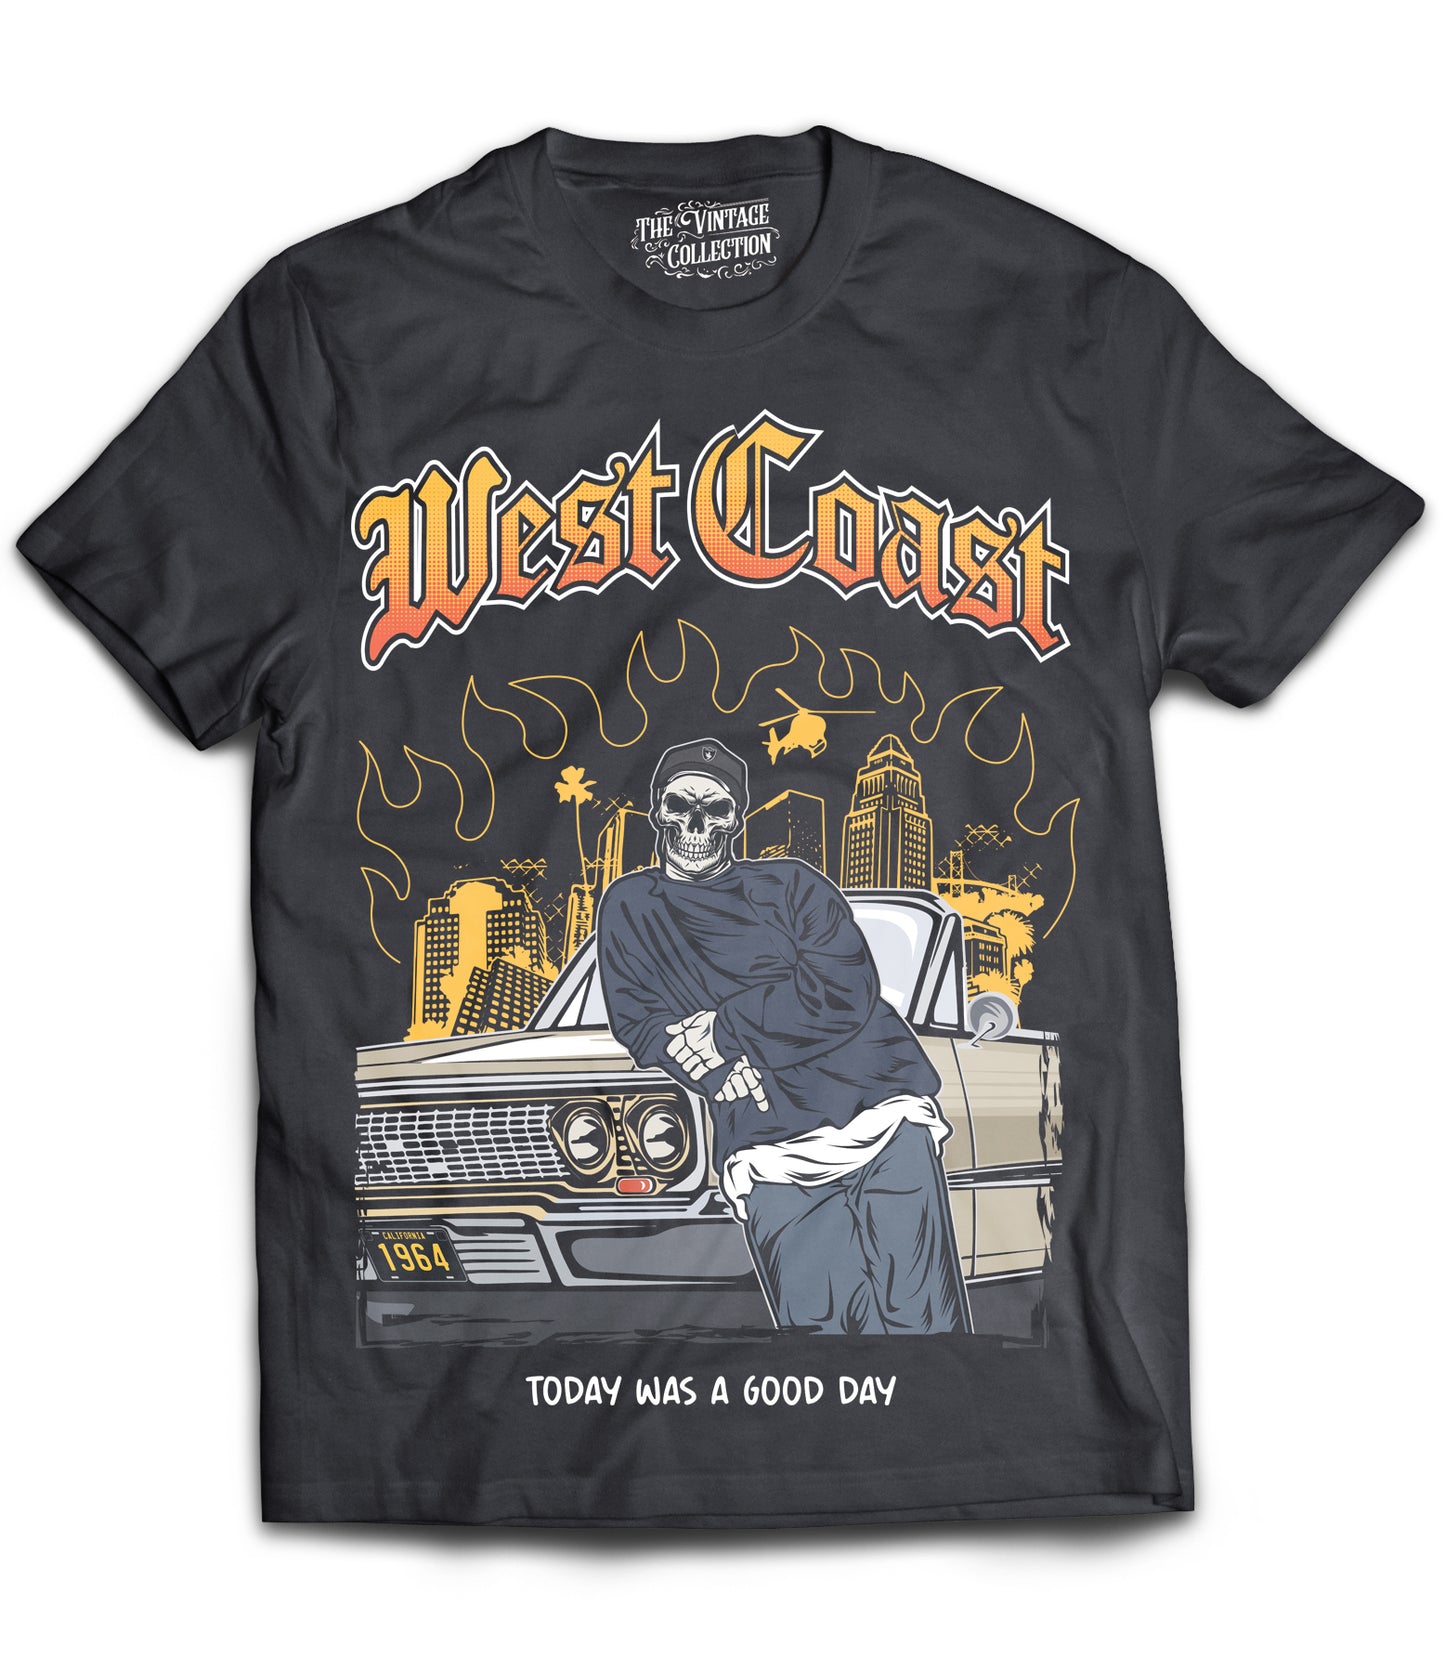 Ice Cube "West Coast" Shirt *Skeleton Edition* (Black)